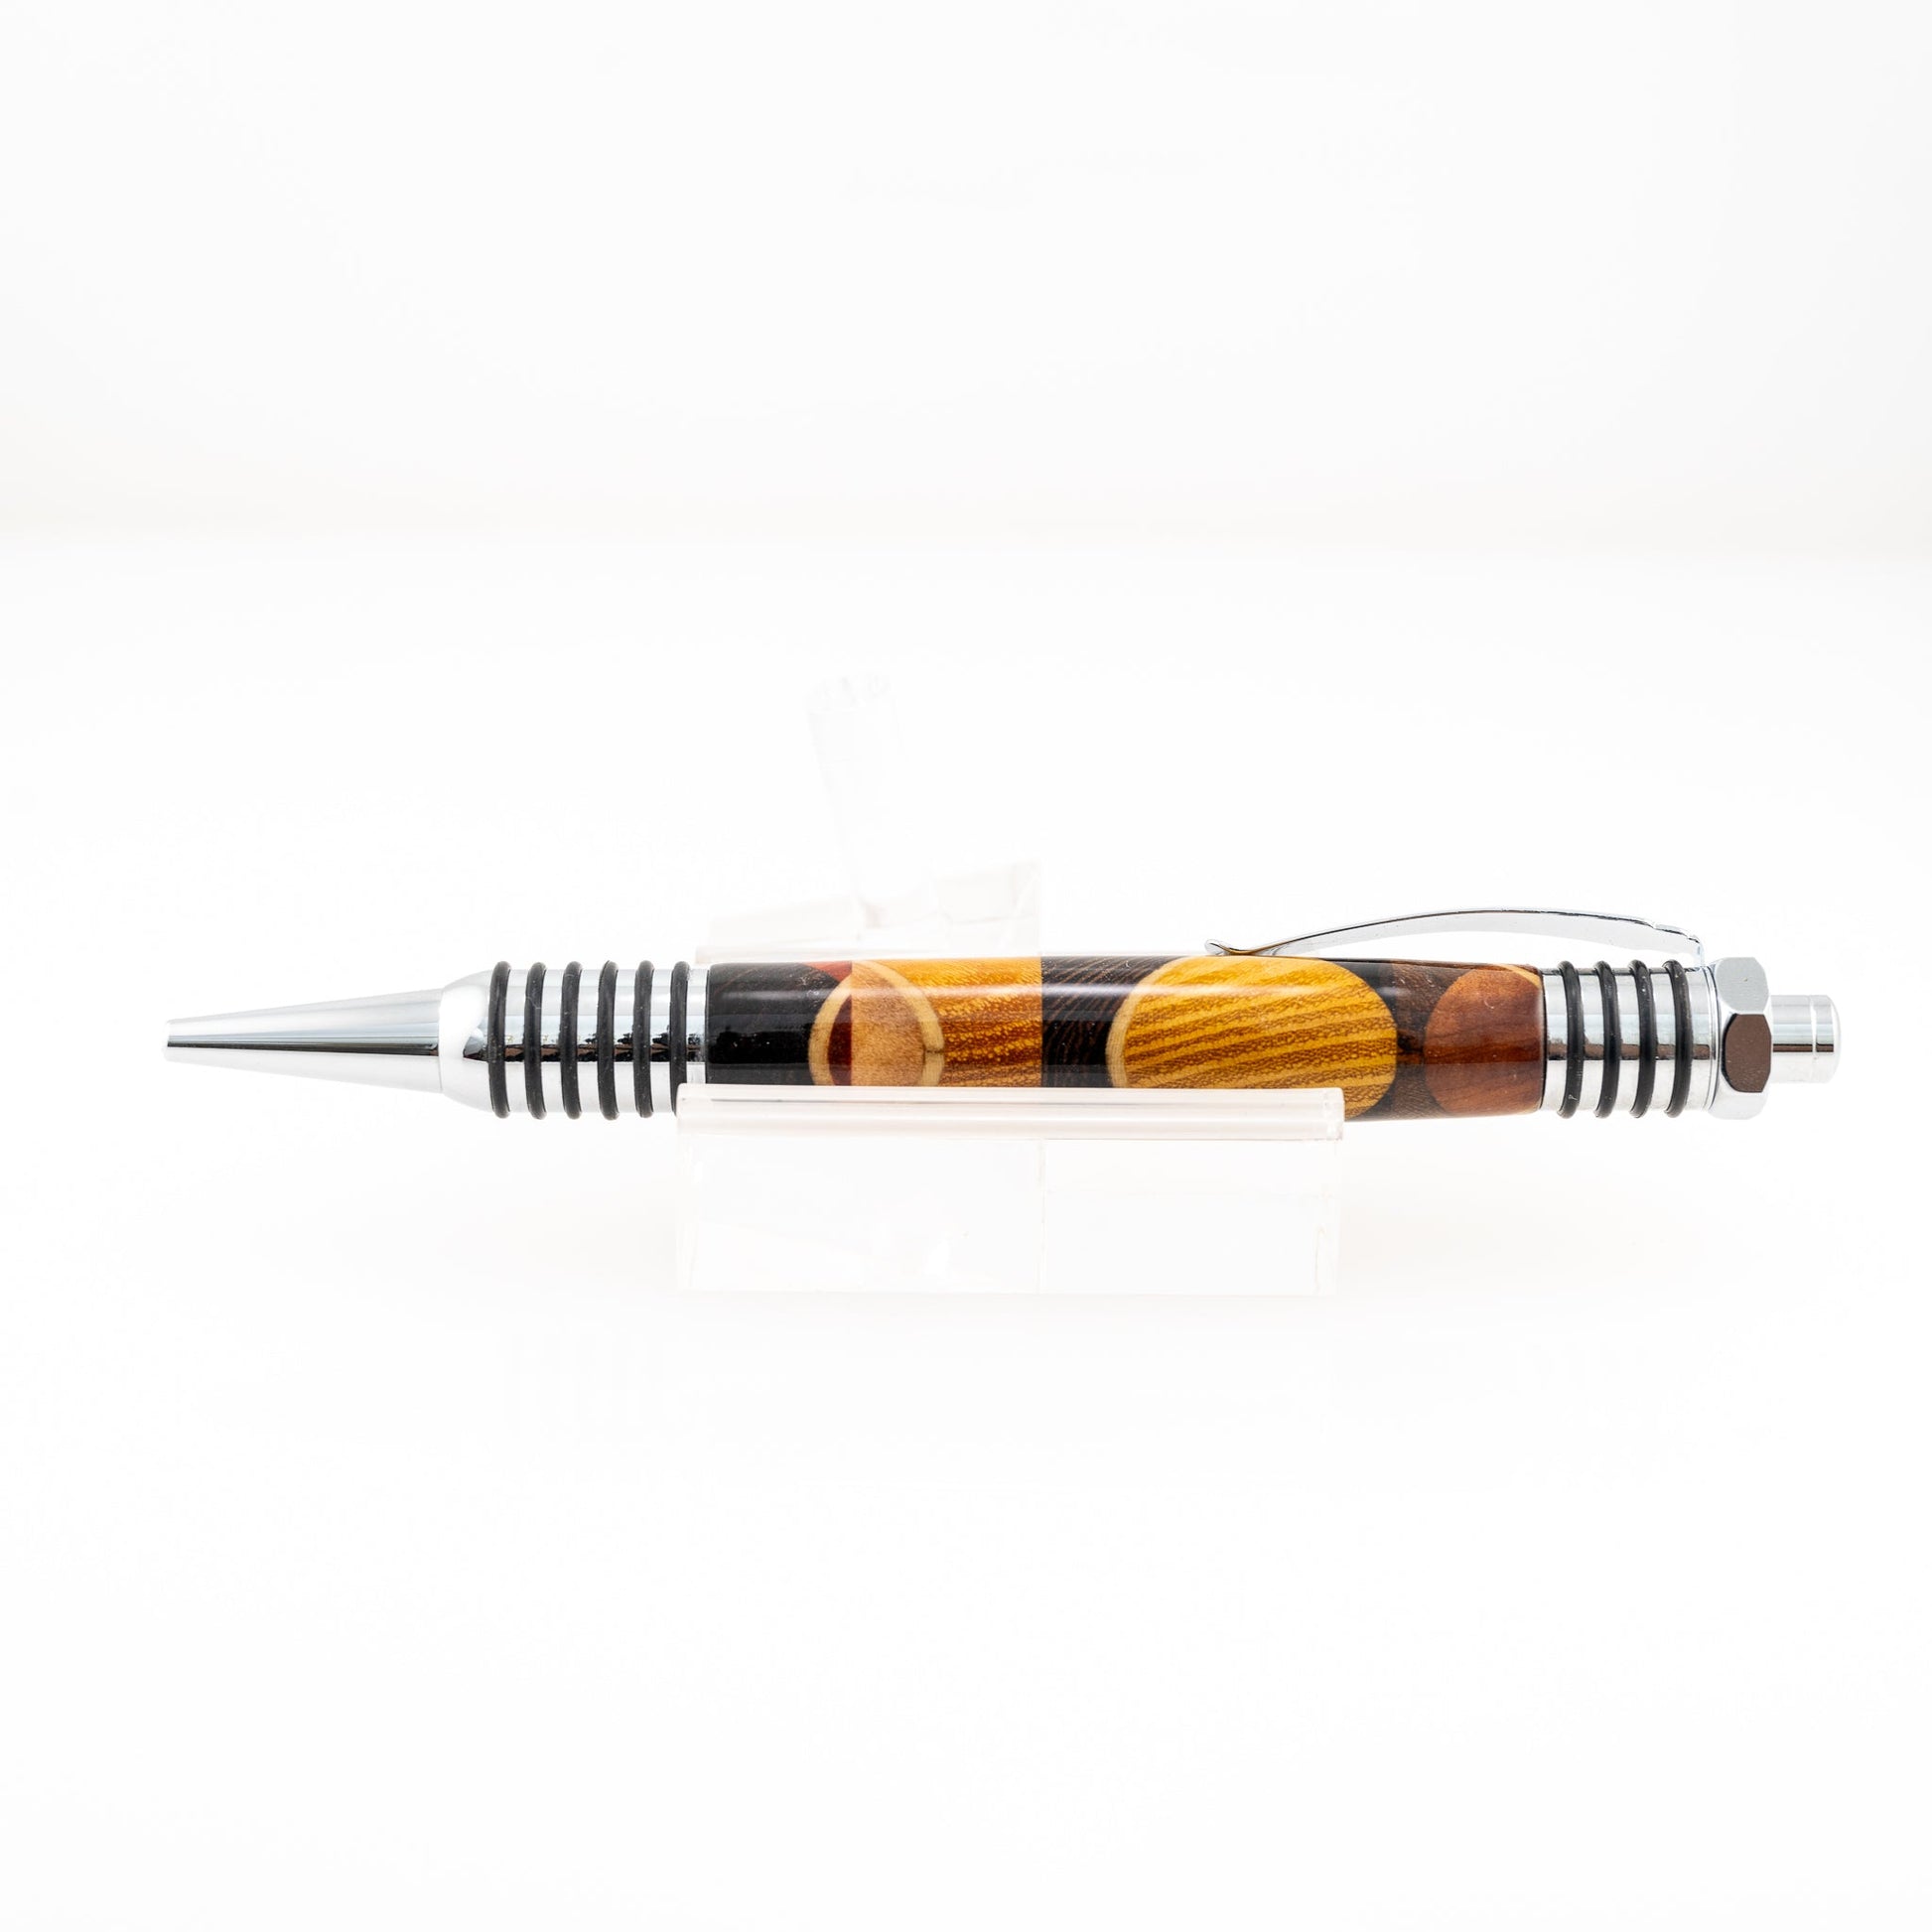 Handmade Osage orange, Wenge, Walnut, Redheart, Maple, Pine and Olivewood wood pen with chrome plating